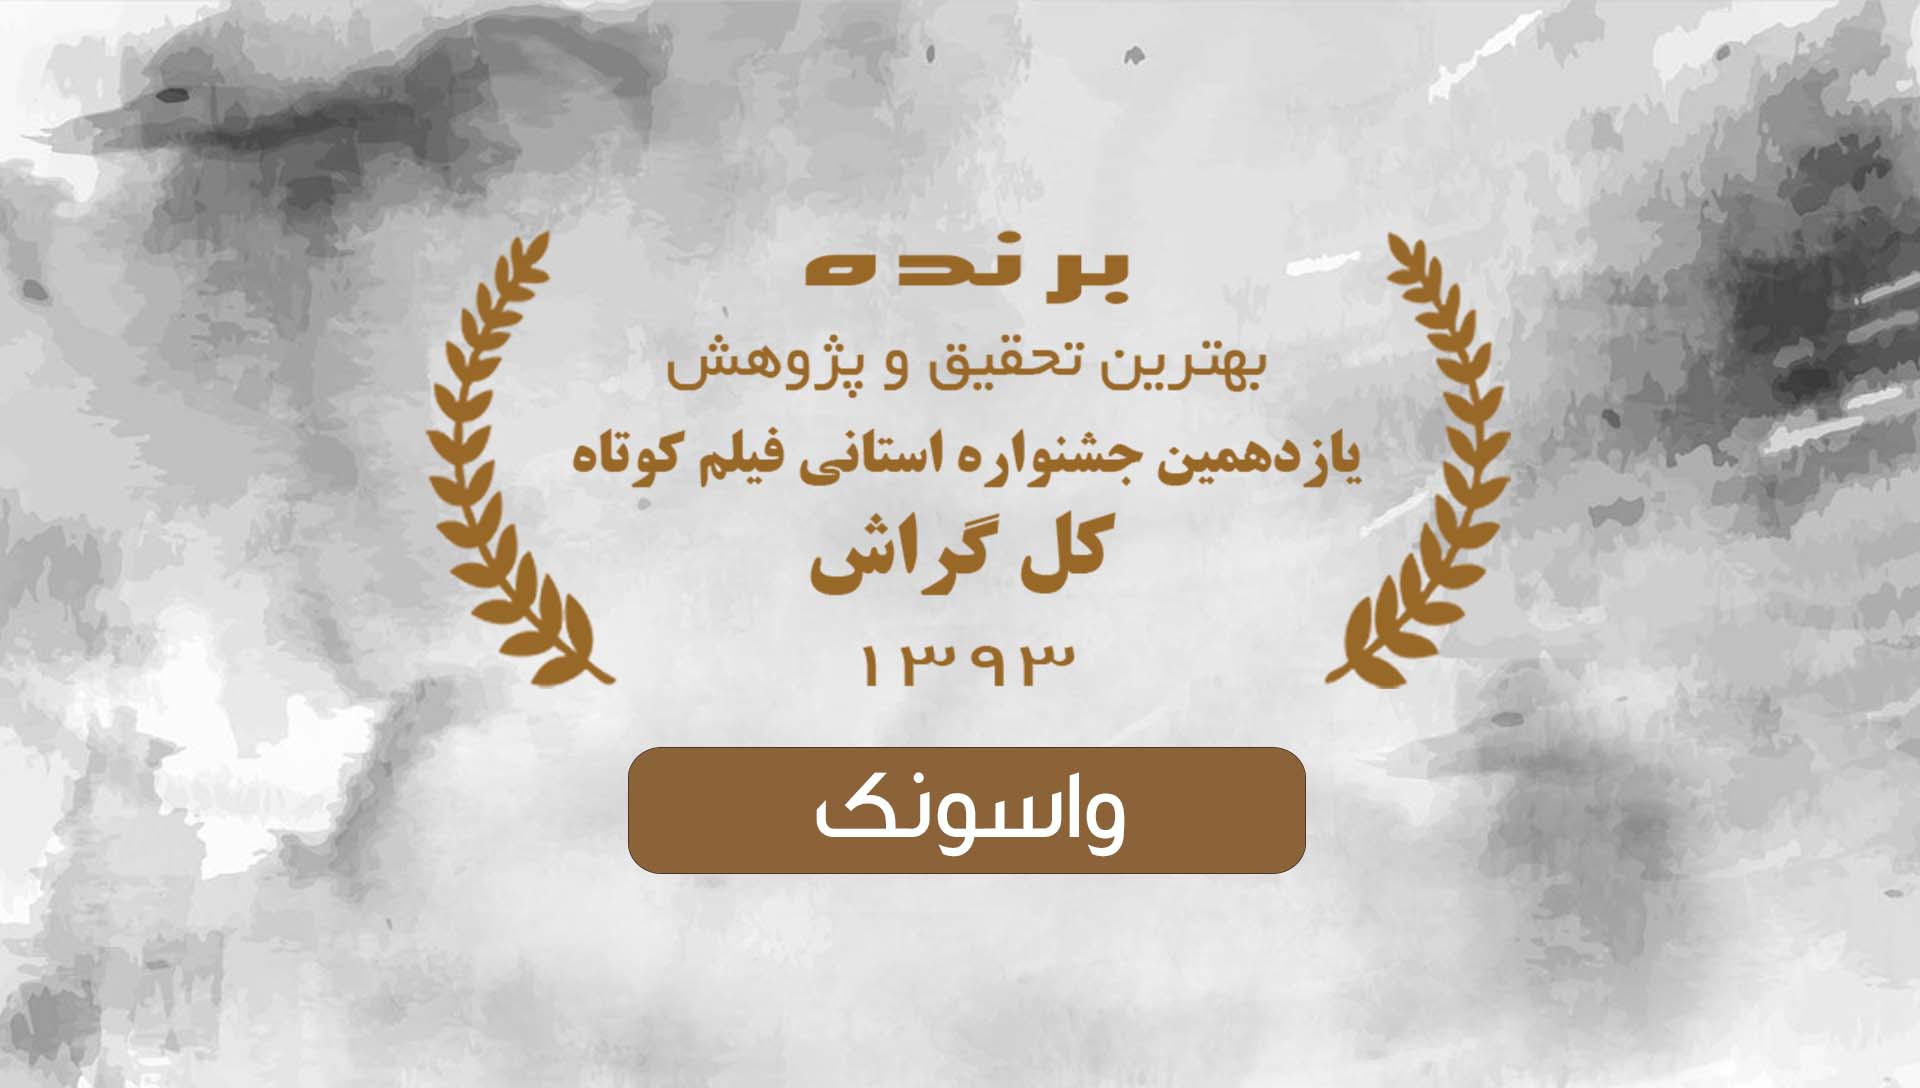 جشنواره کل گراش 93 - شرکت فیلم سازی زوم شیراز برادران شریفی